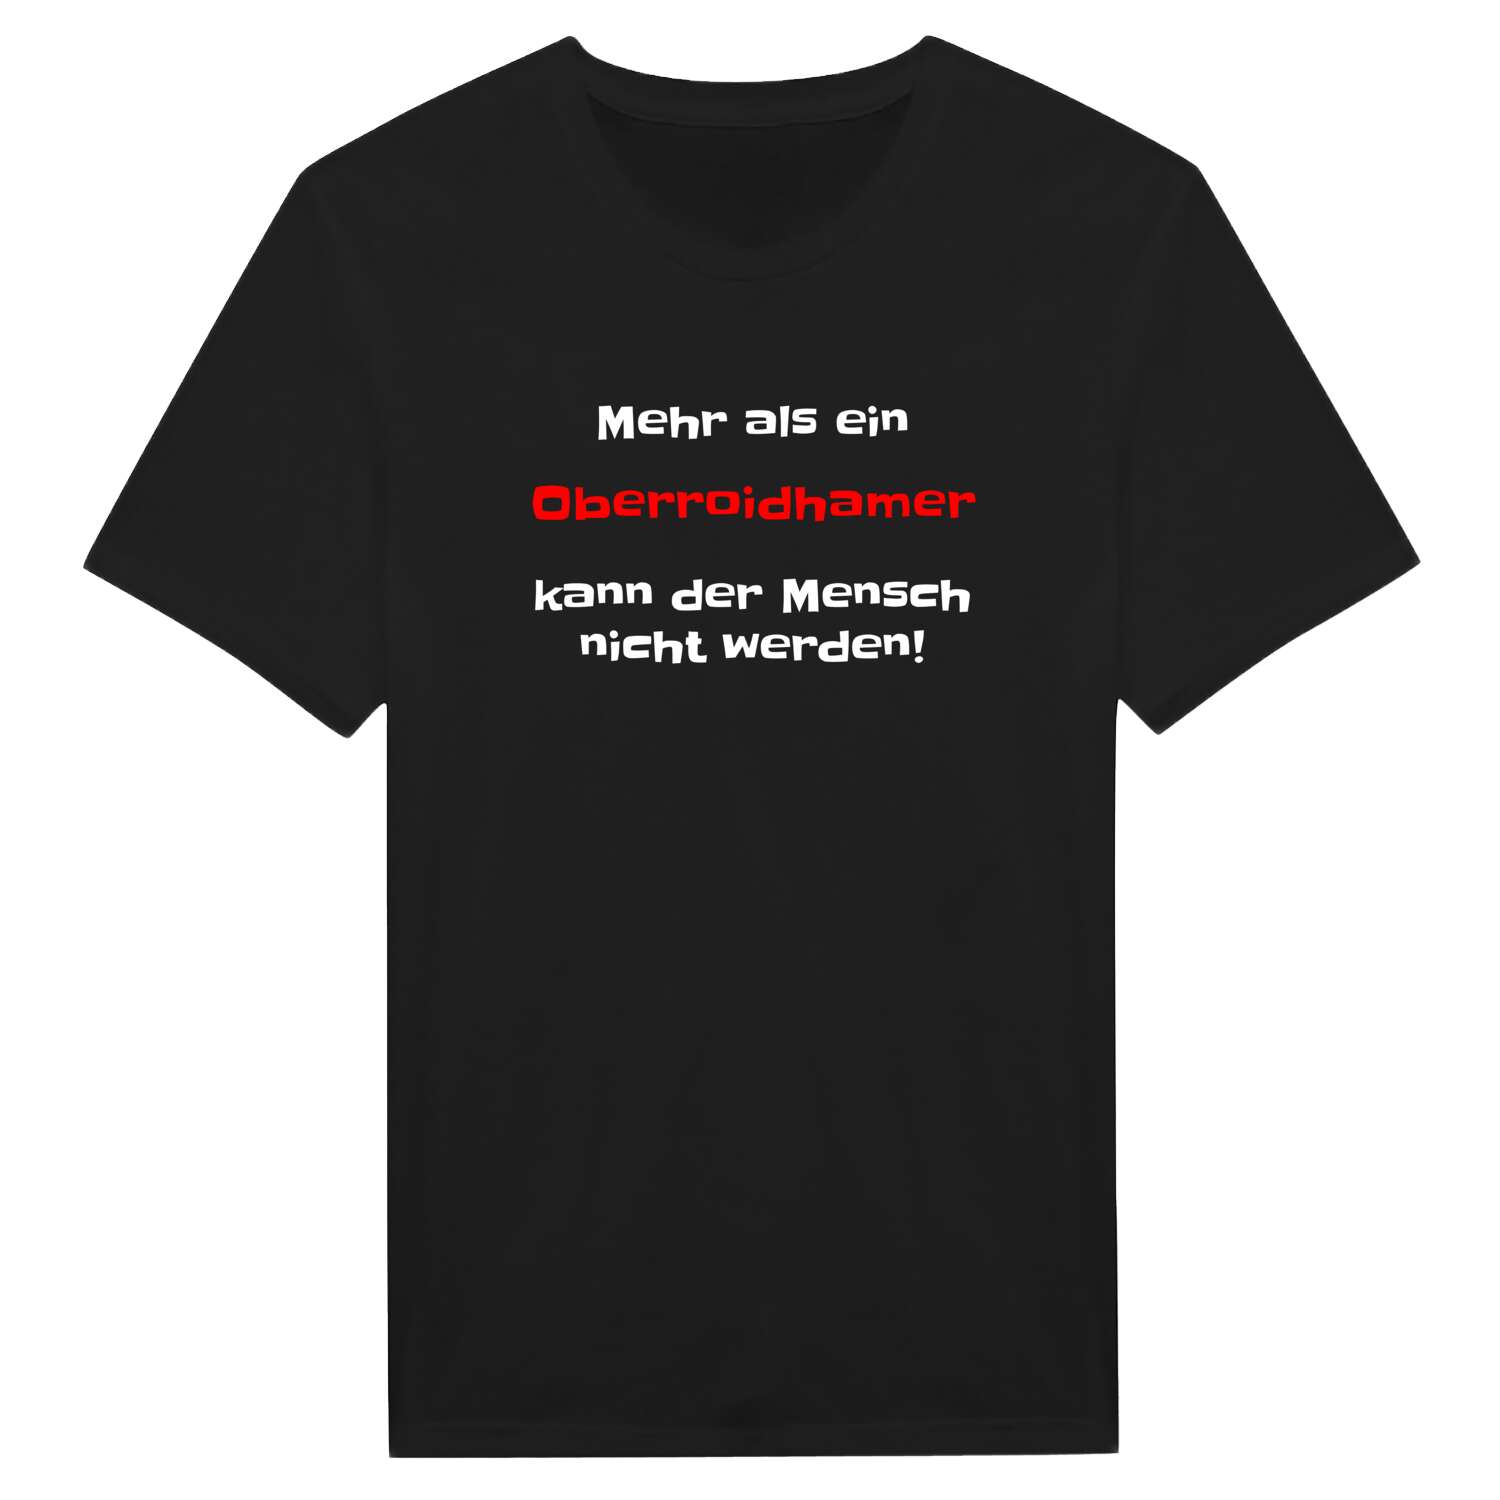 Oberroidham T-Shirt »Mehr als ein«